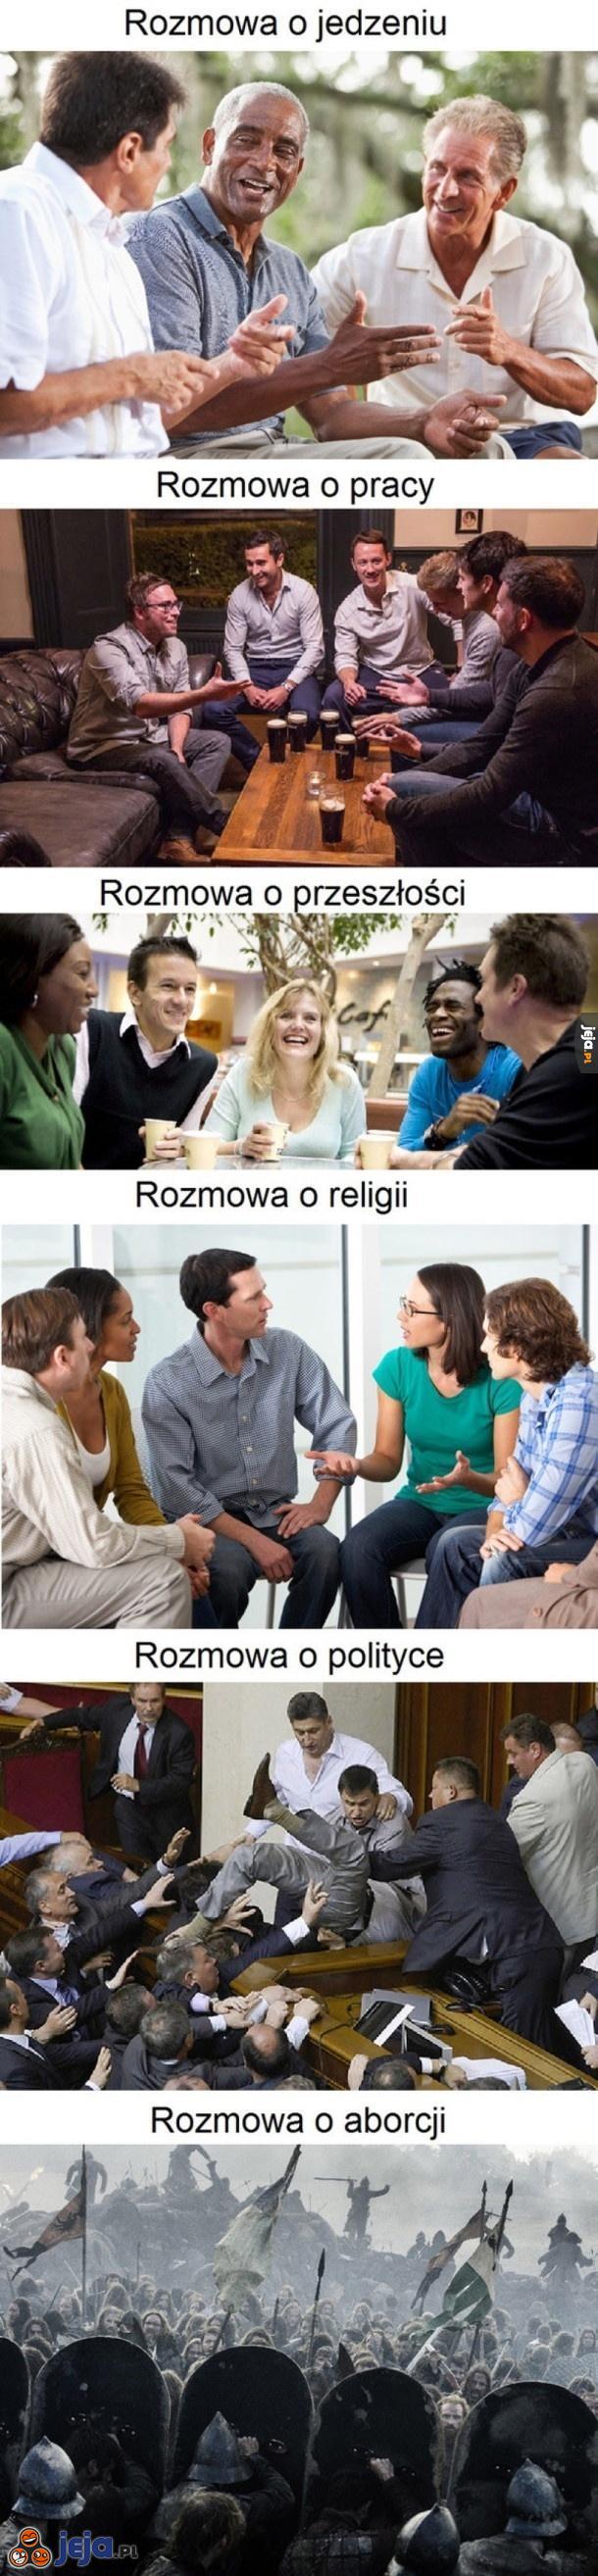 Poziom dyskusji w Polsce